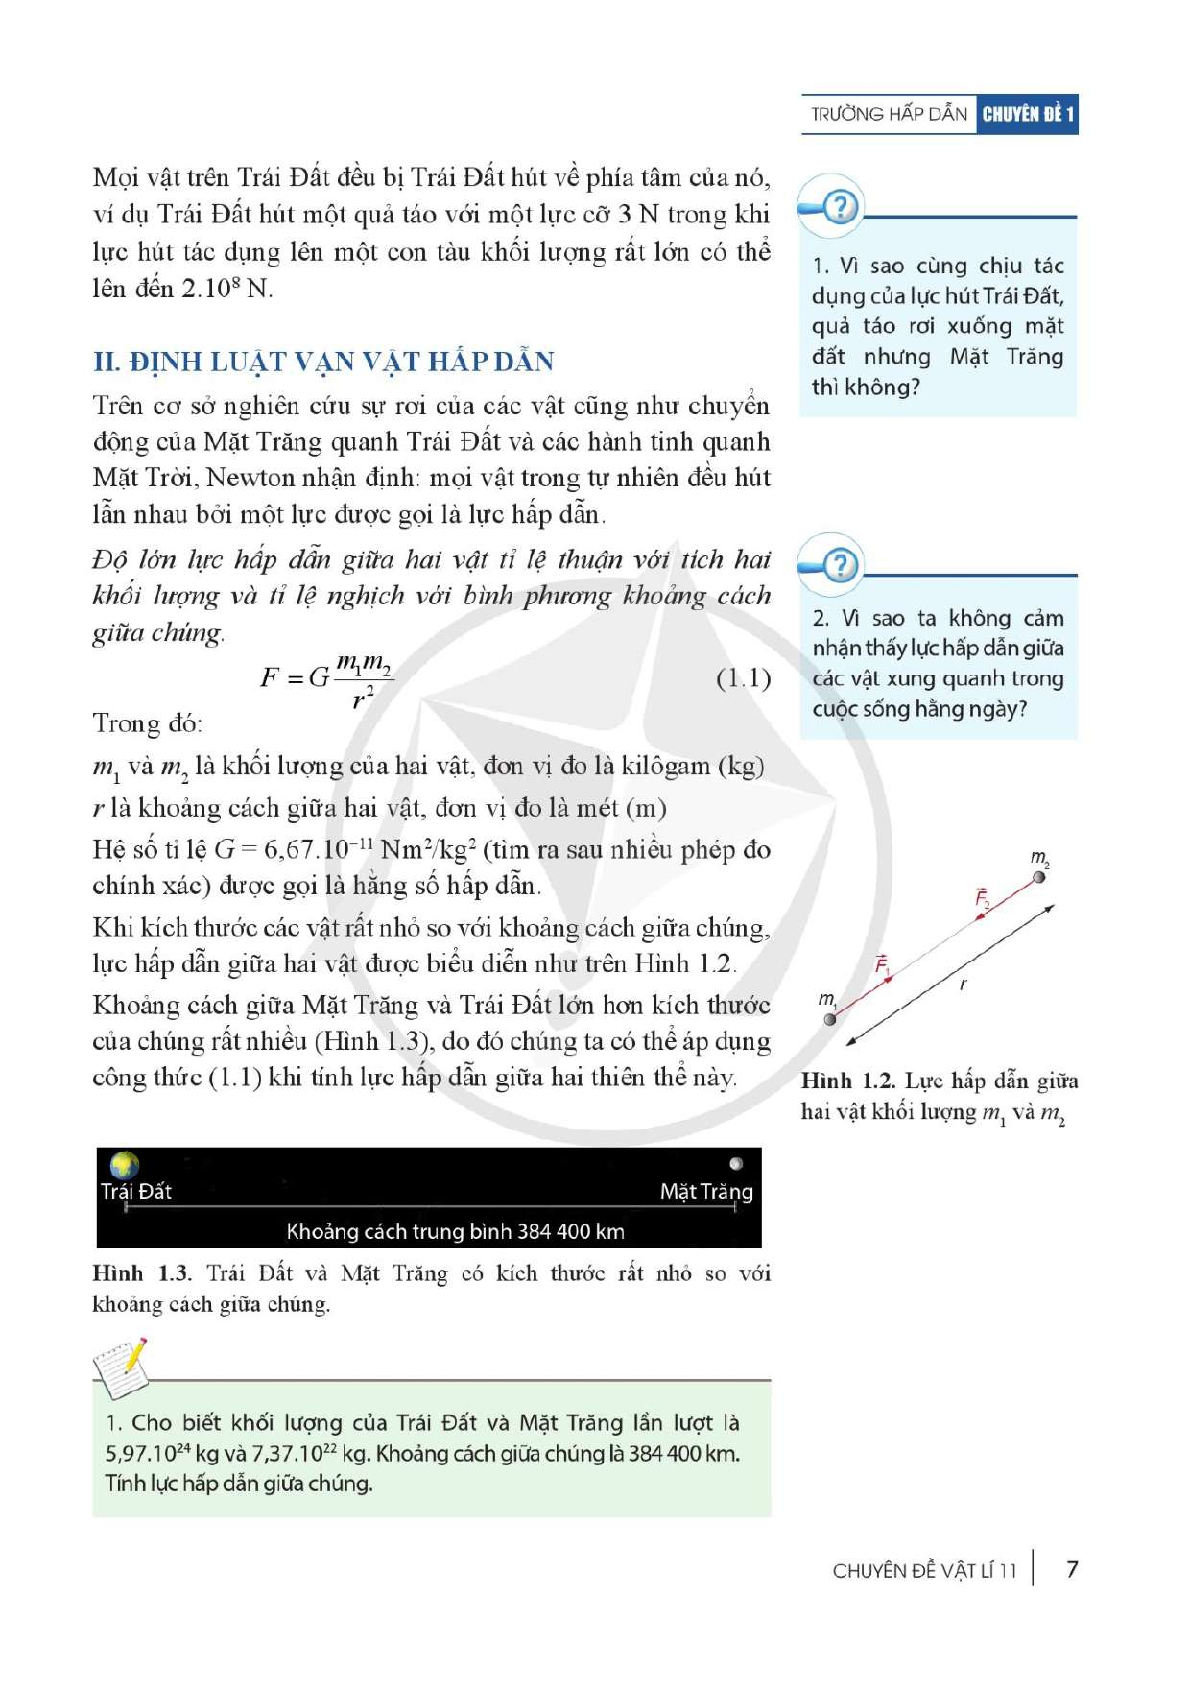 Chuyên đề học tập Vật lí 11 Cánh diều pdf (trang 9)